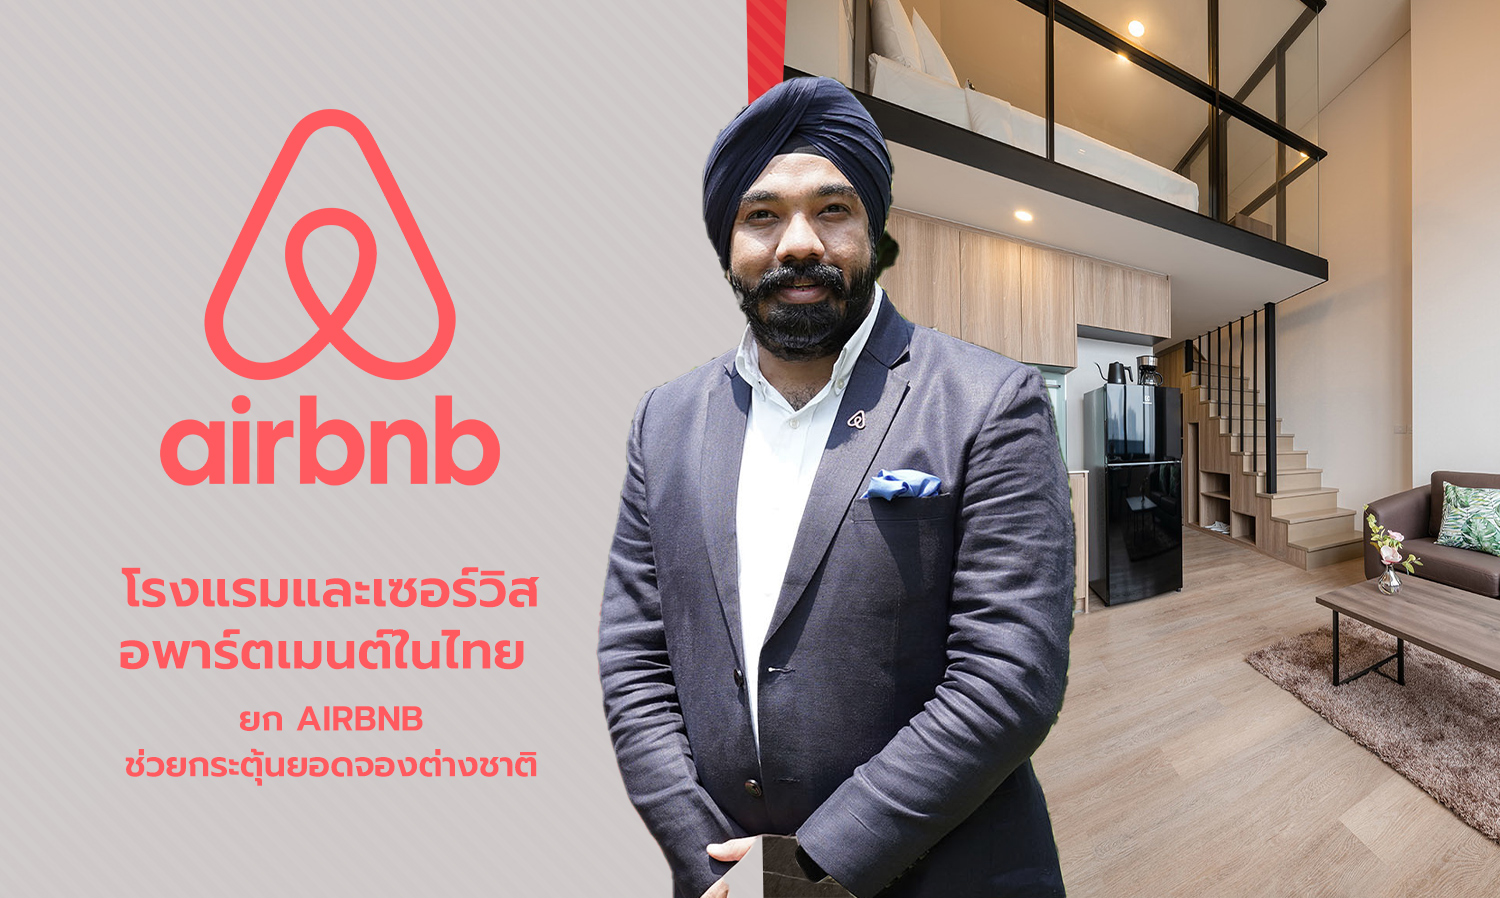 โรงแรมและเซอร์วิส อพาร์ตเมนต์ในไทย ยก Airbnb ช่วยกระตุ้นยอดจองต่างชาติ